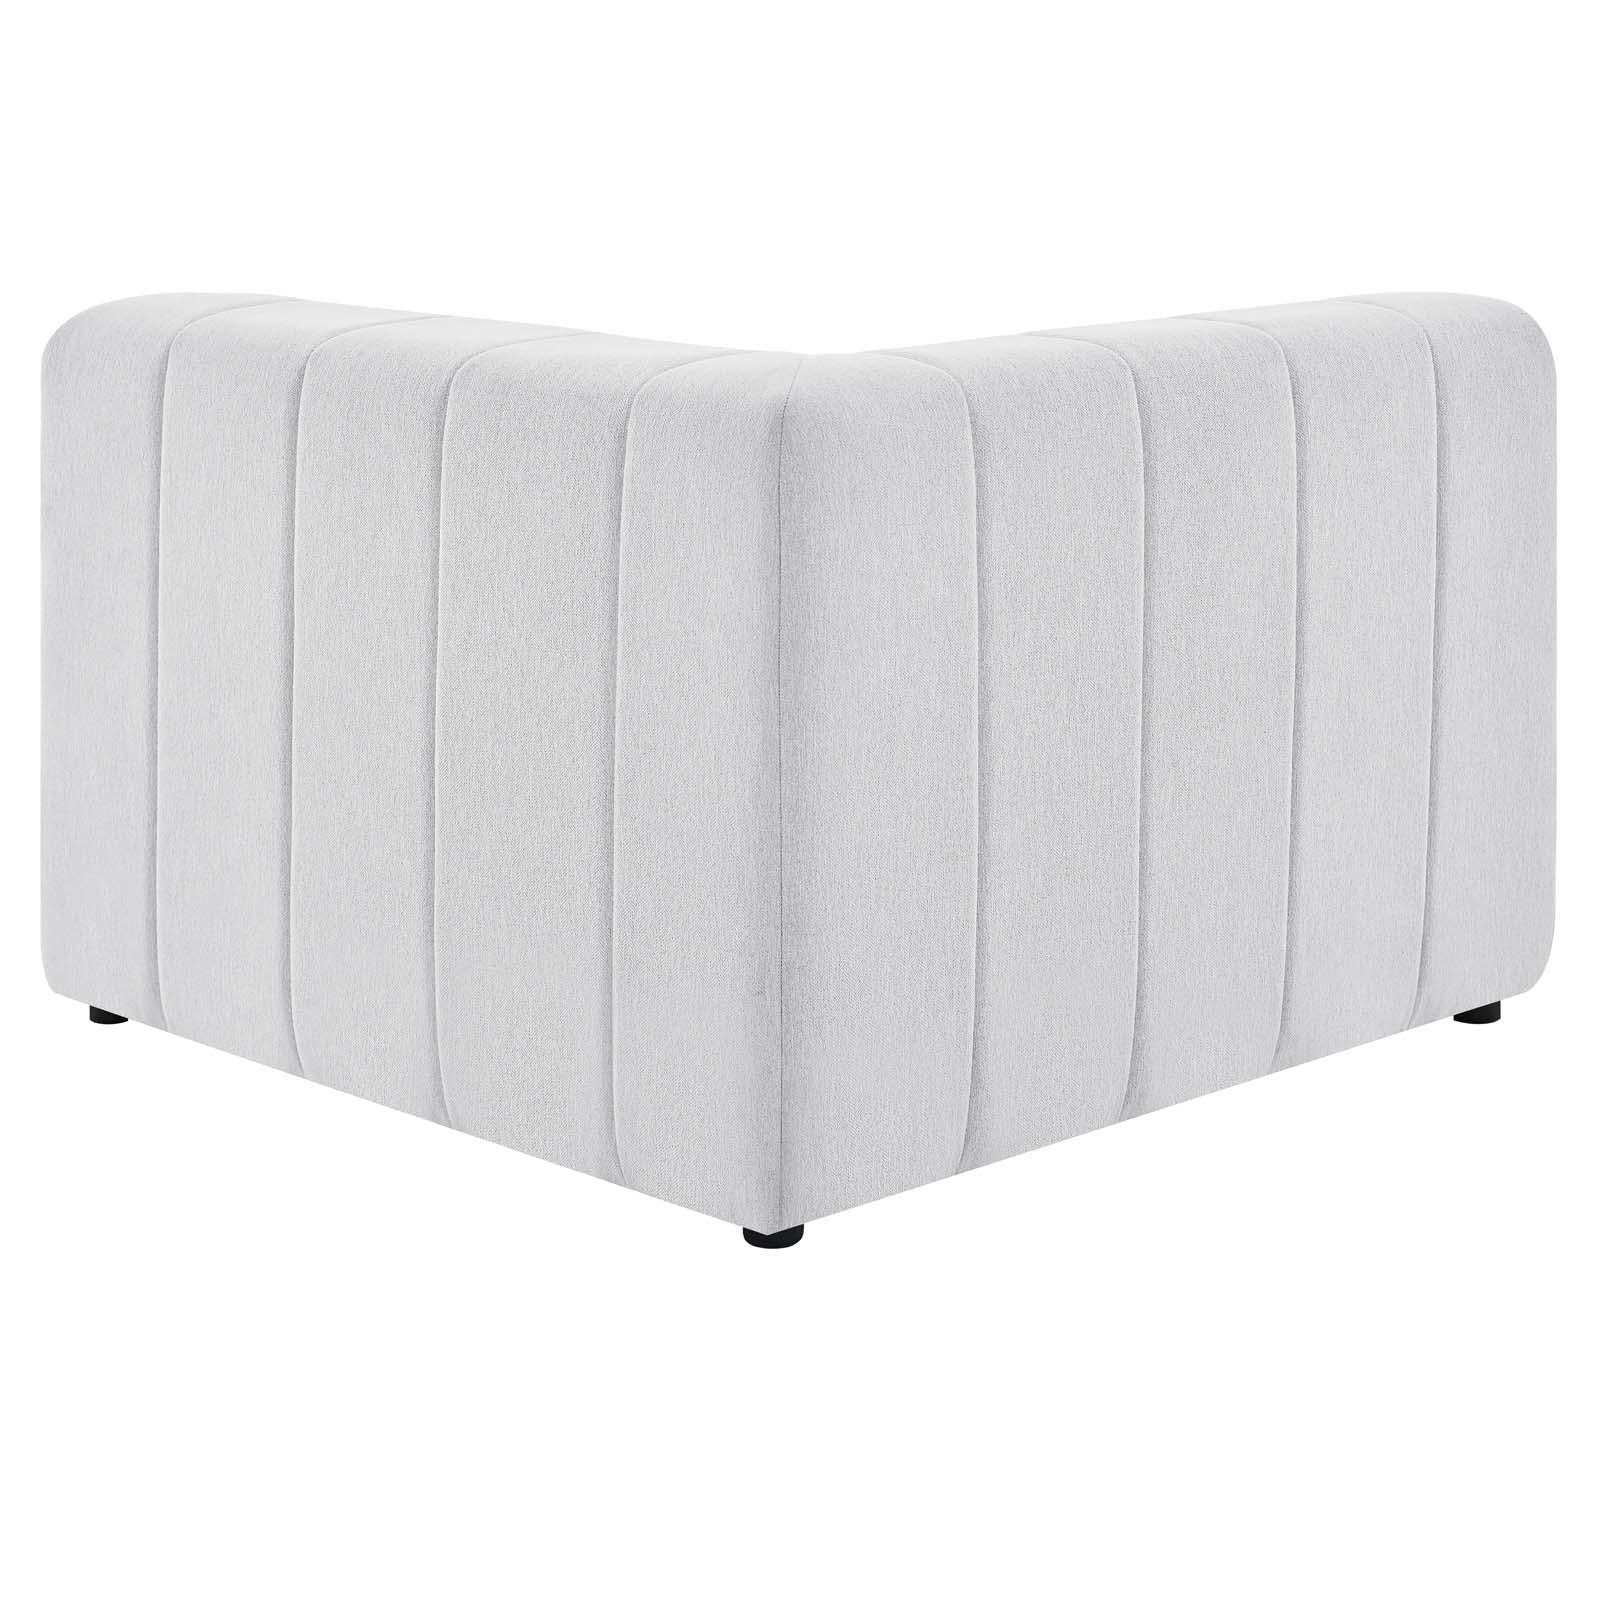 Modway Furniture Modern Bartlett Upholstered Fabric Left-Arm Chair - EEI-4396